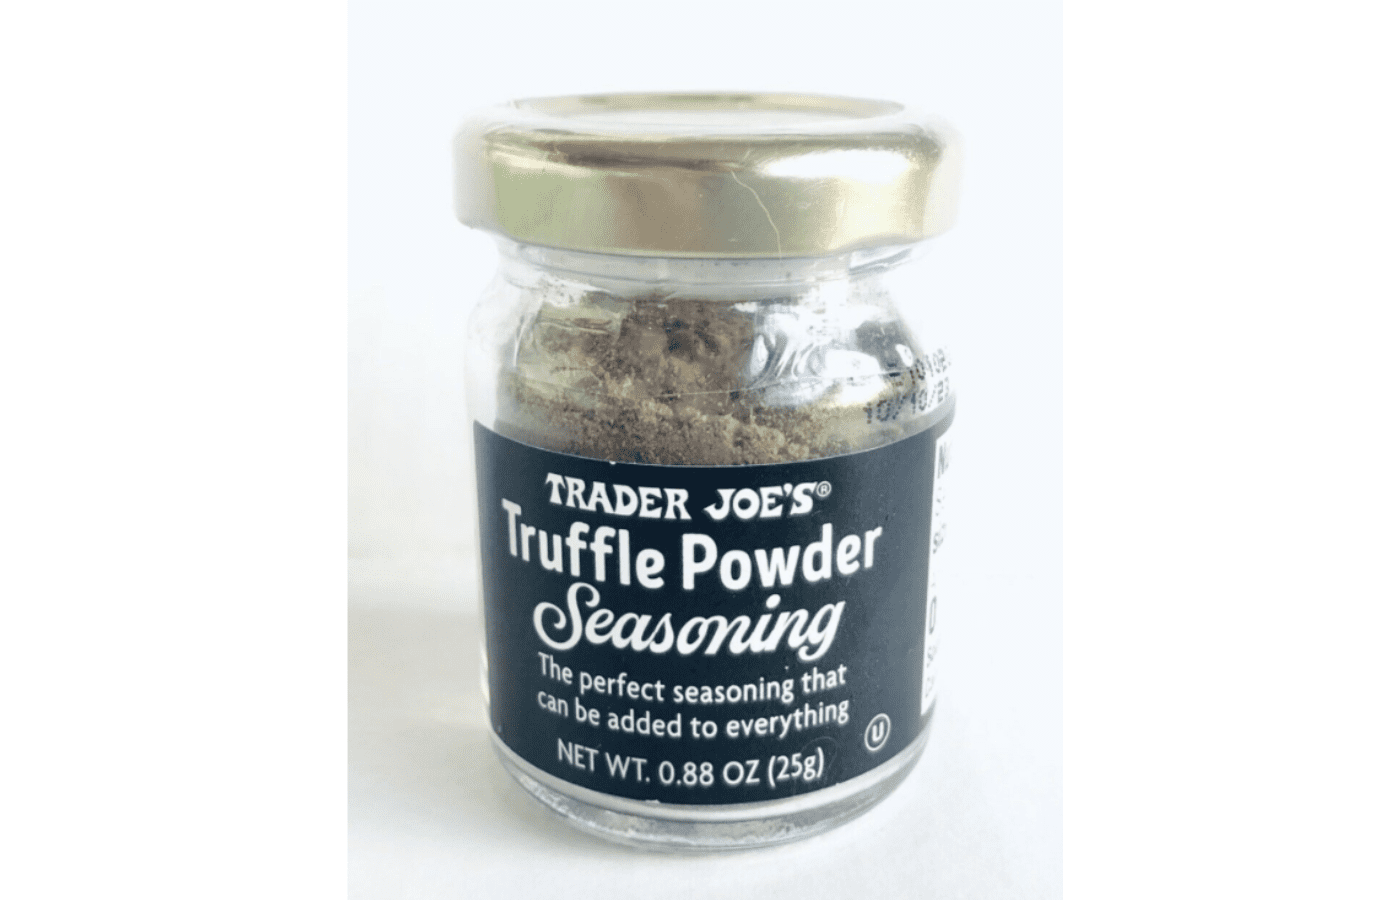 How to Use Trader Joe's Truffle Powder